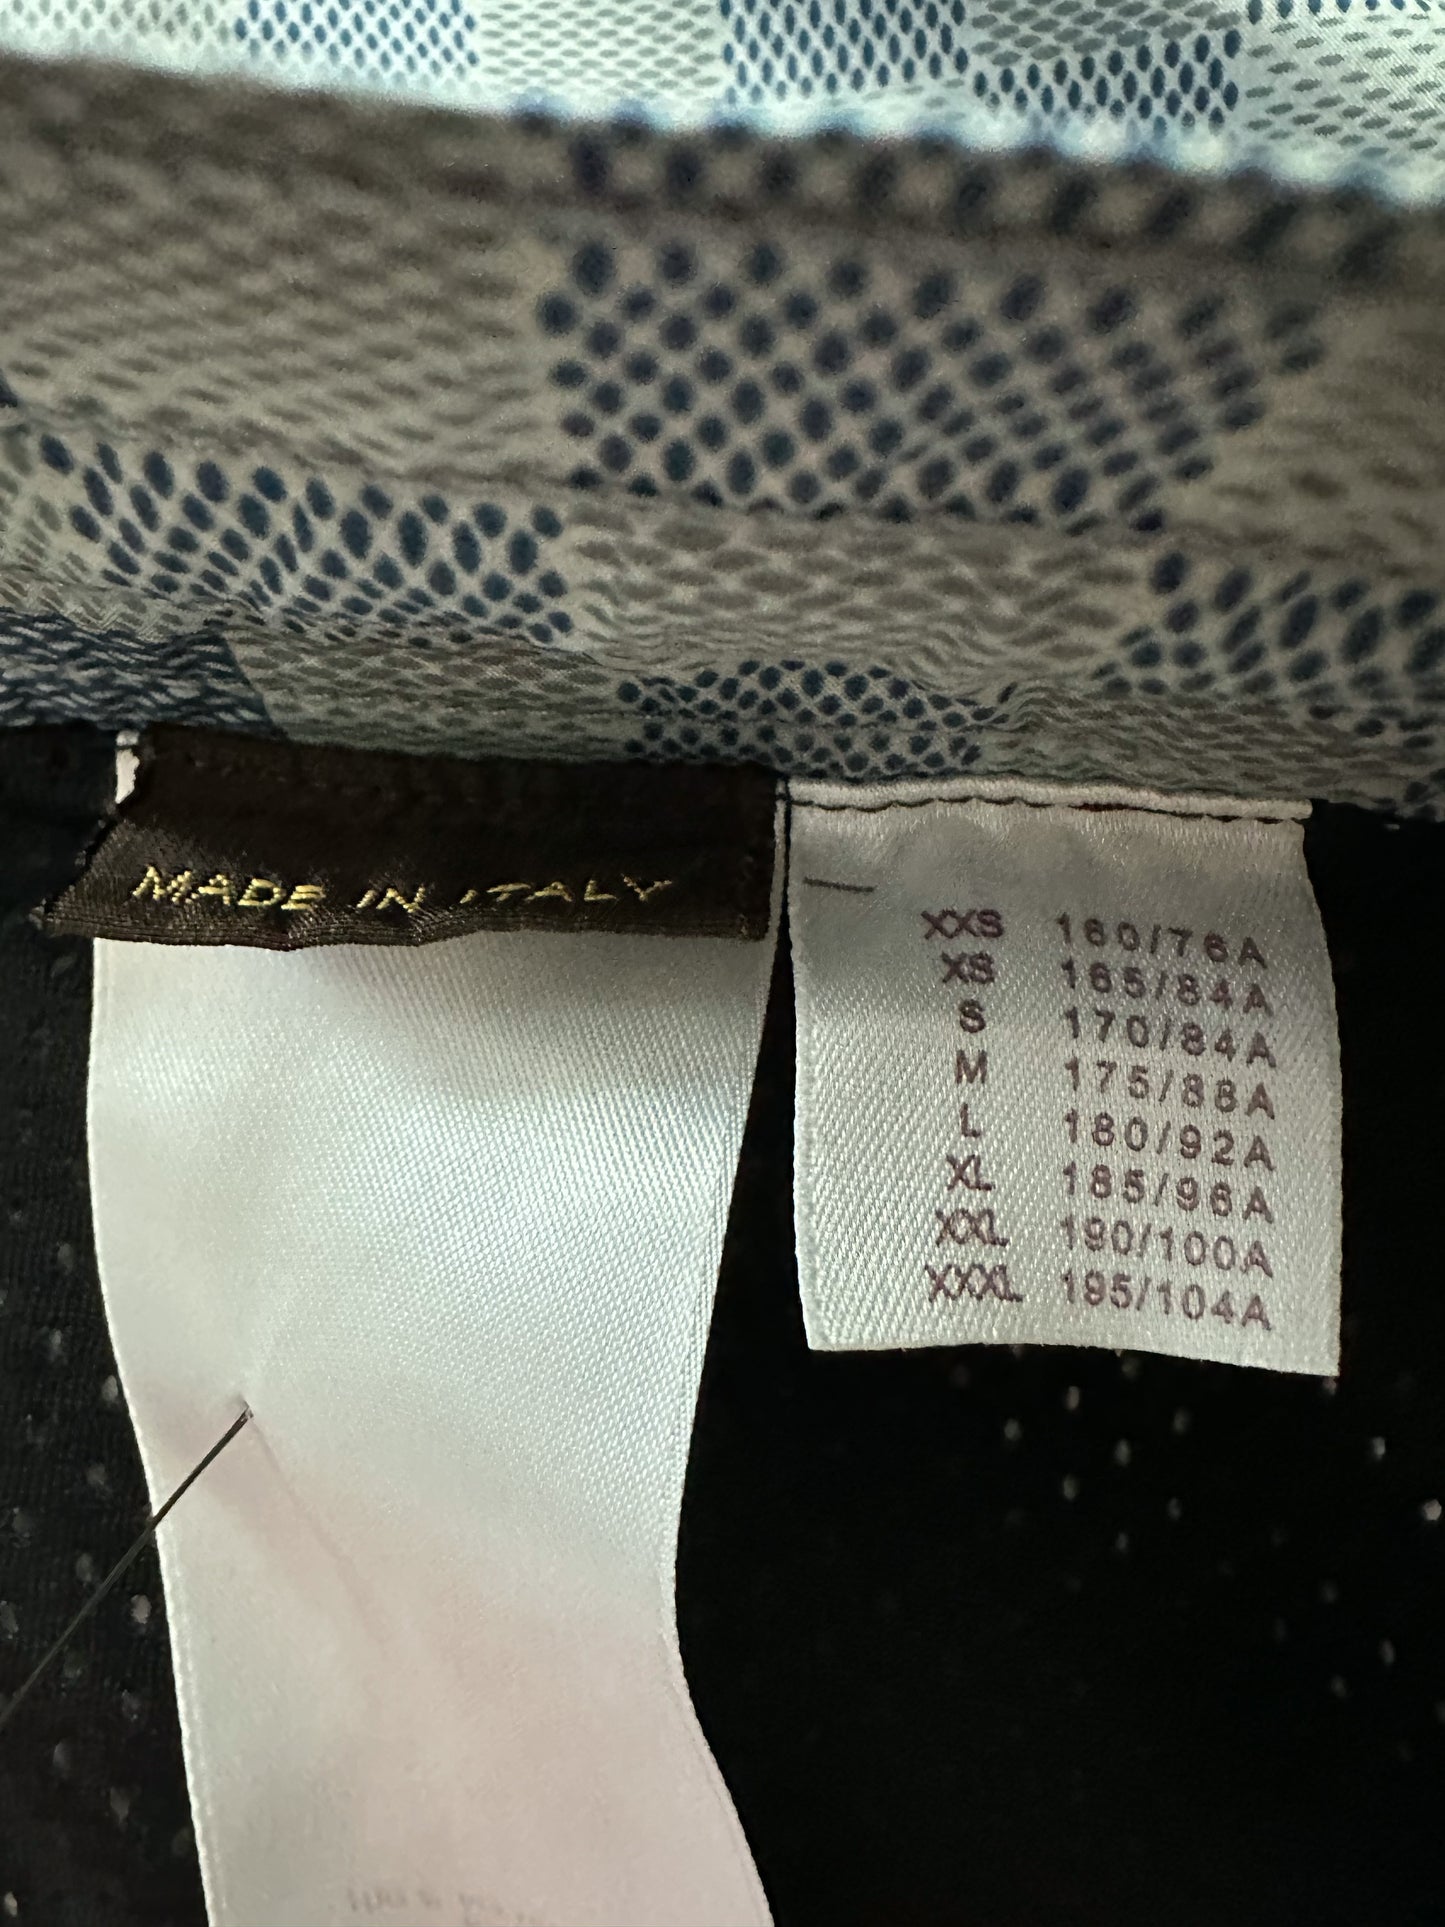 Louis Vuitton Damier Jacquard Shorts Grey Mouse. Size S0